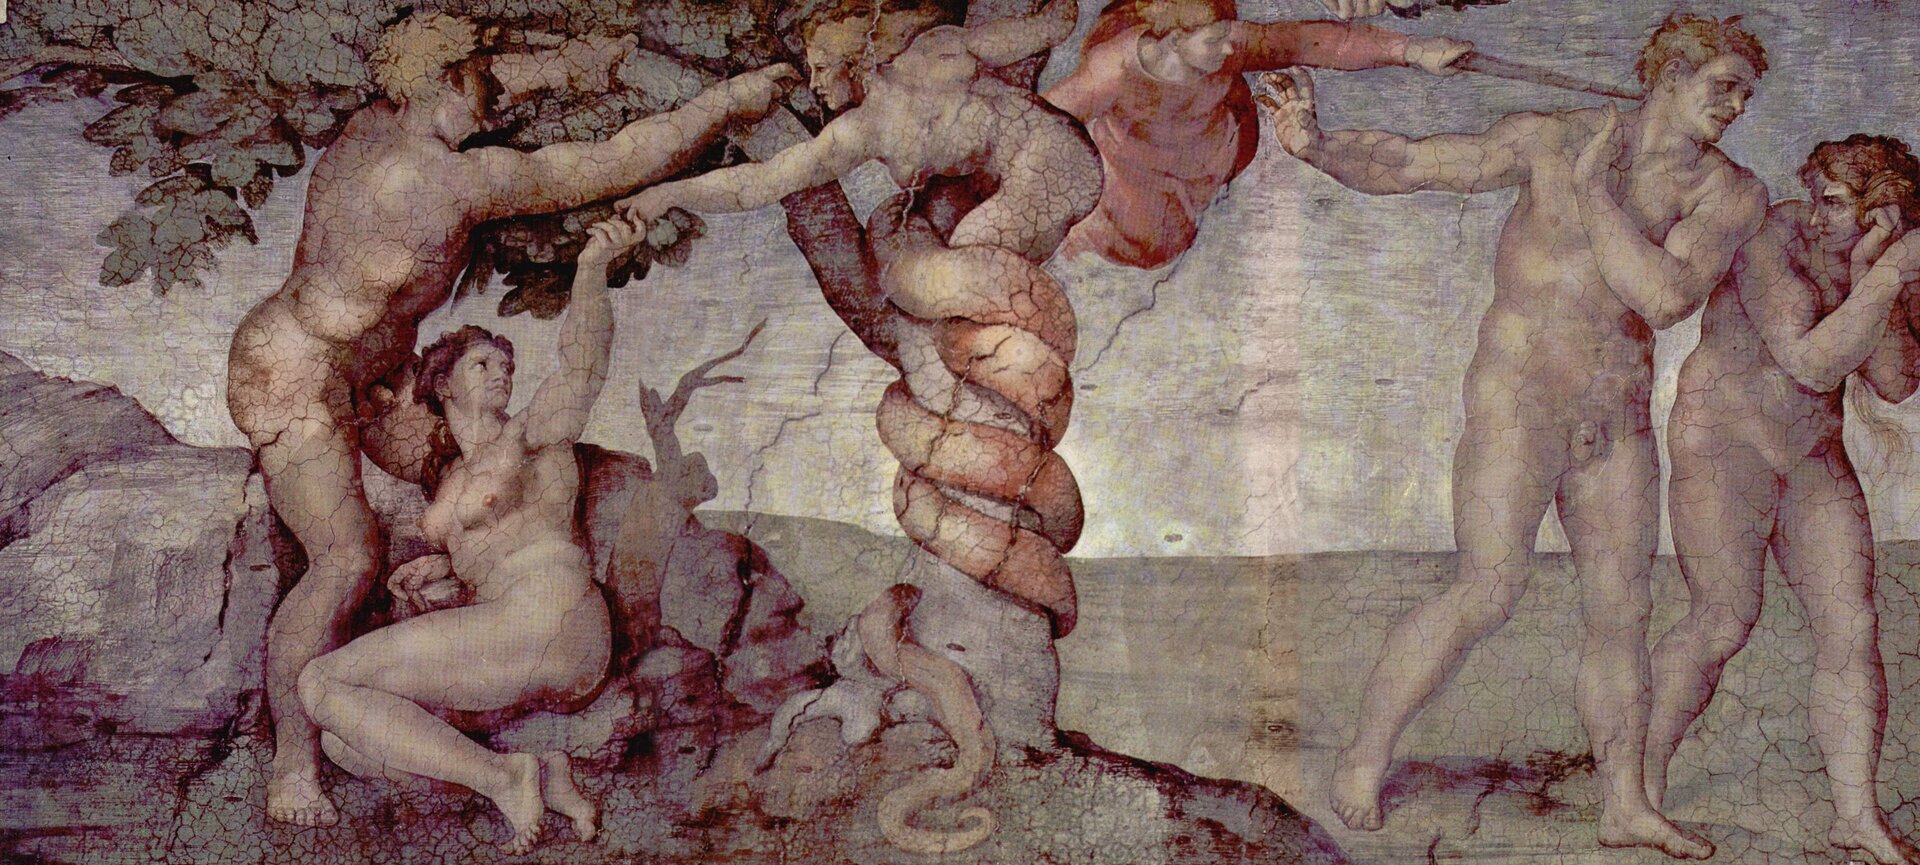 Ilustracja przedstawia fragment fresku ze sklepienia Kaplicy Sykstyńskiej, autorstwa Michała Anioła. W centrum horyzontalnej kompozycji znajduje się drzewo, którego pień owija ogon węża o tułowiu i głowie kobiety. Kobieta/wąż podaje lewą ręką jabłko siedzącej na skalistej ziemi po lewej stronie drzewa, Ewie. Nad Ewą stoi Adam, który przytrzymując dłońmi gałąź, próbuje nagiąć drzewo. Z prawej strony artysta namalował scenę wygnania z raju. Nad dwoma skulonymi sylwetkami kobiety i mężczyzny unosi się anioł w czerwonej szacie z mieczem w dłoni. Postacie Adama i Ewy po obu stronach kompozycji są nagie. Całość kompozycji utrzymana jest w bogatej gamie barw, z dominacją jasnych błękitów i beżów.